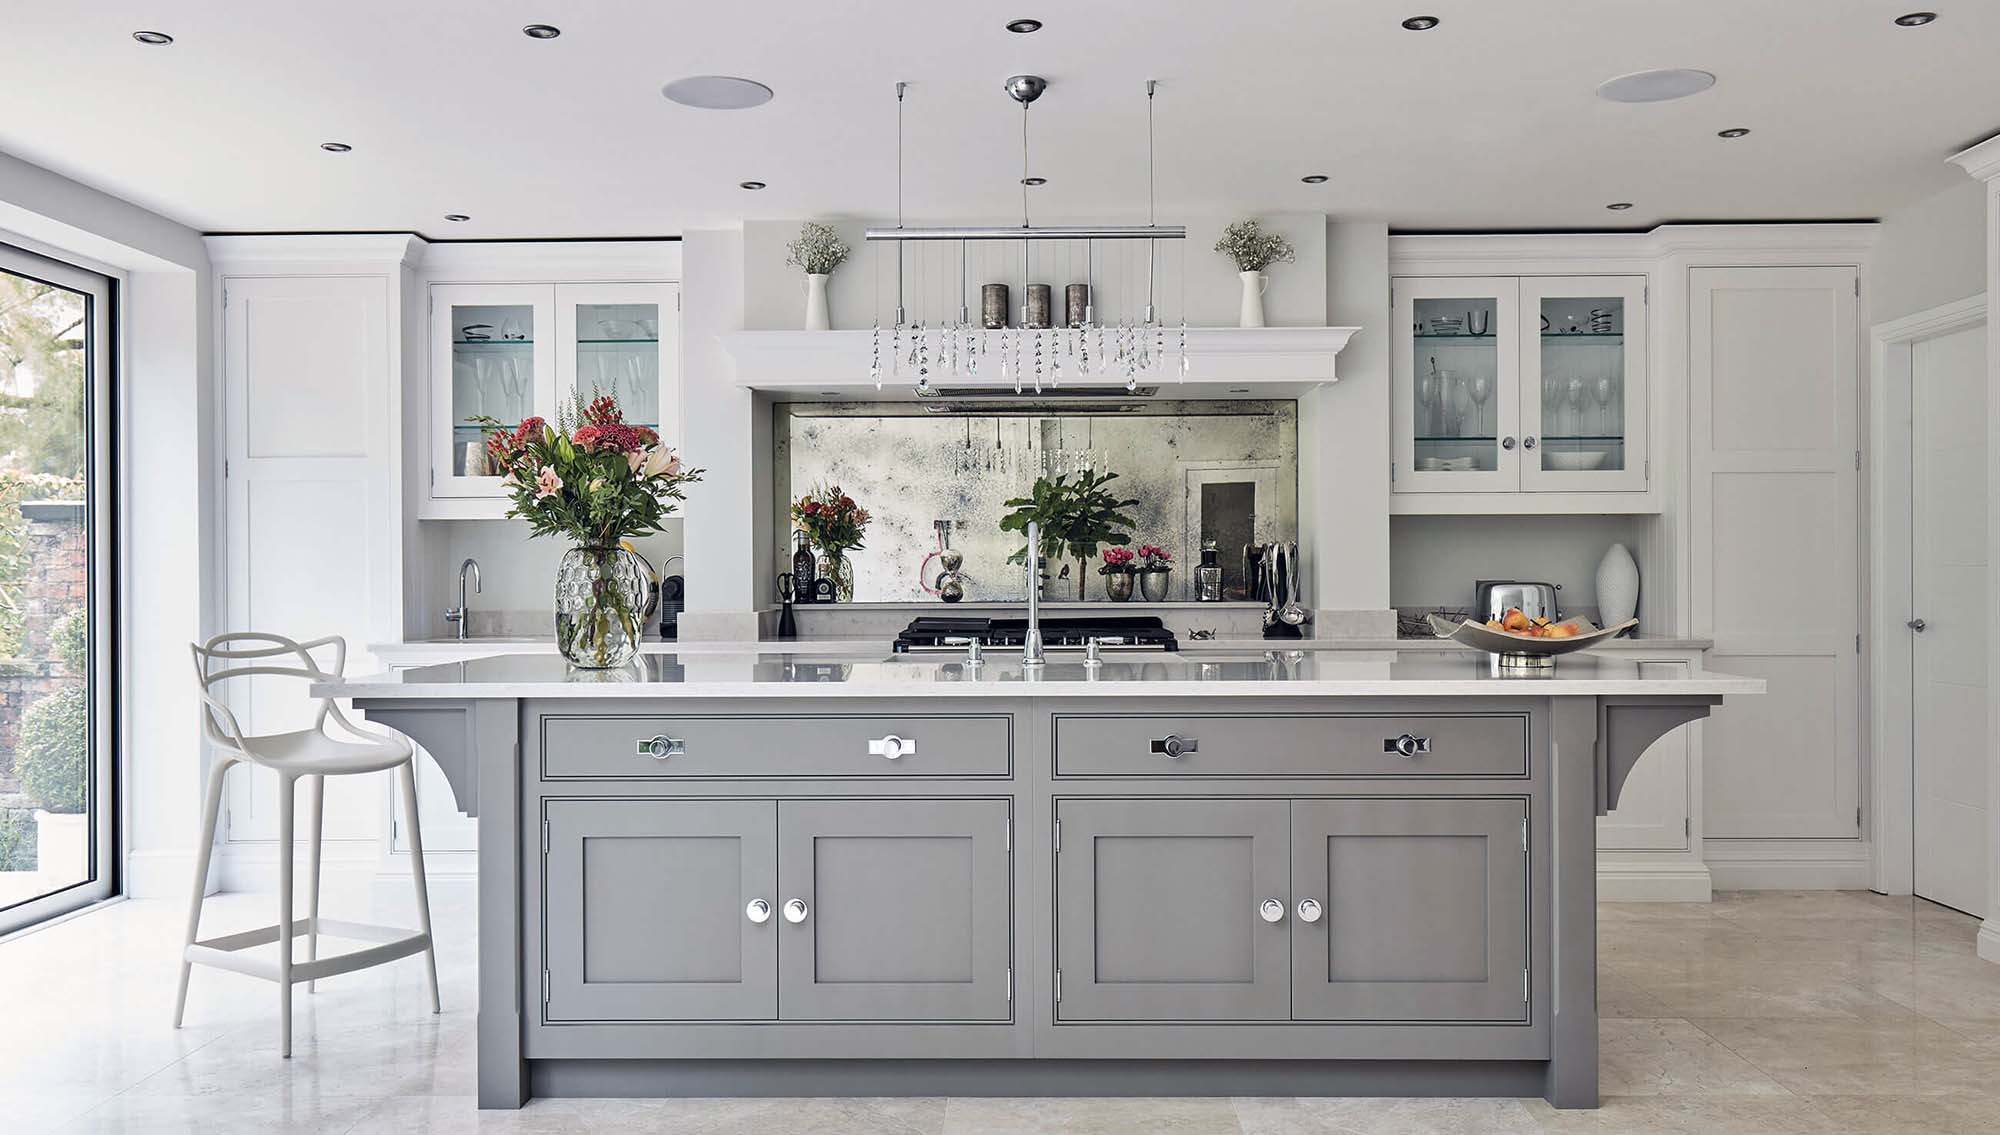 Luxury Kitchen Design Ideas 2019 Top luxury Kitchen interior designs Gambrick Luxury Home Builder NJ